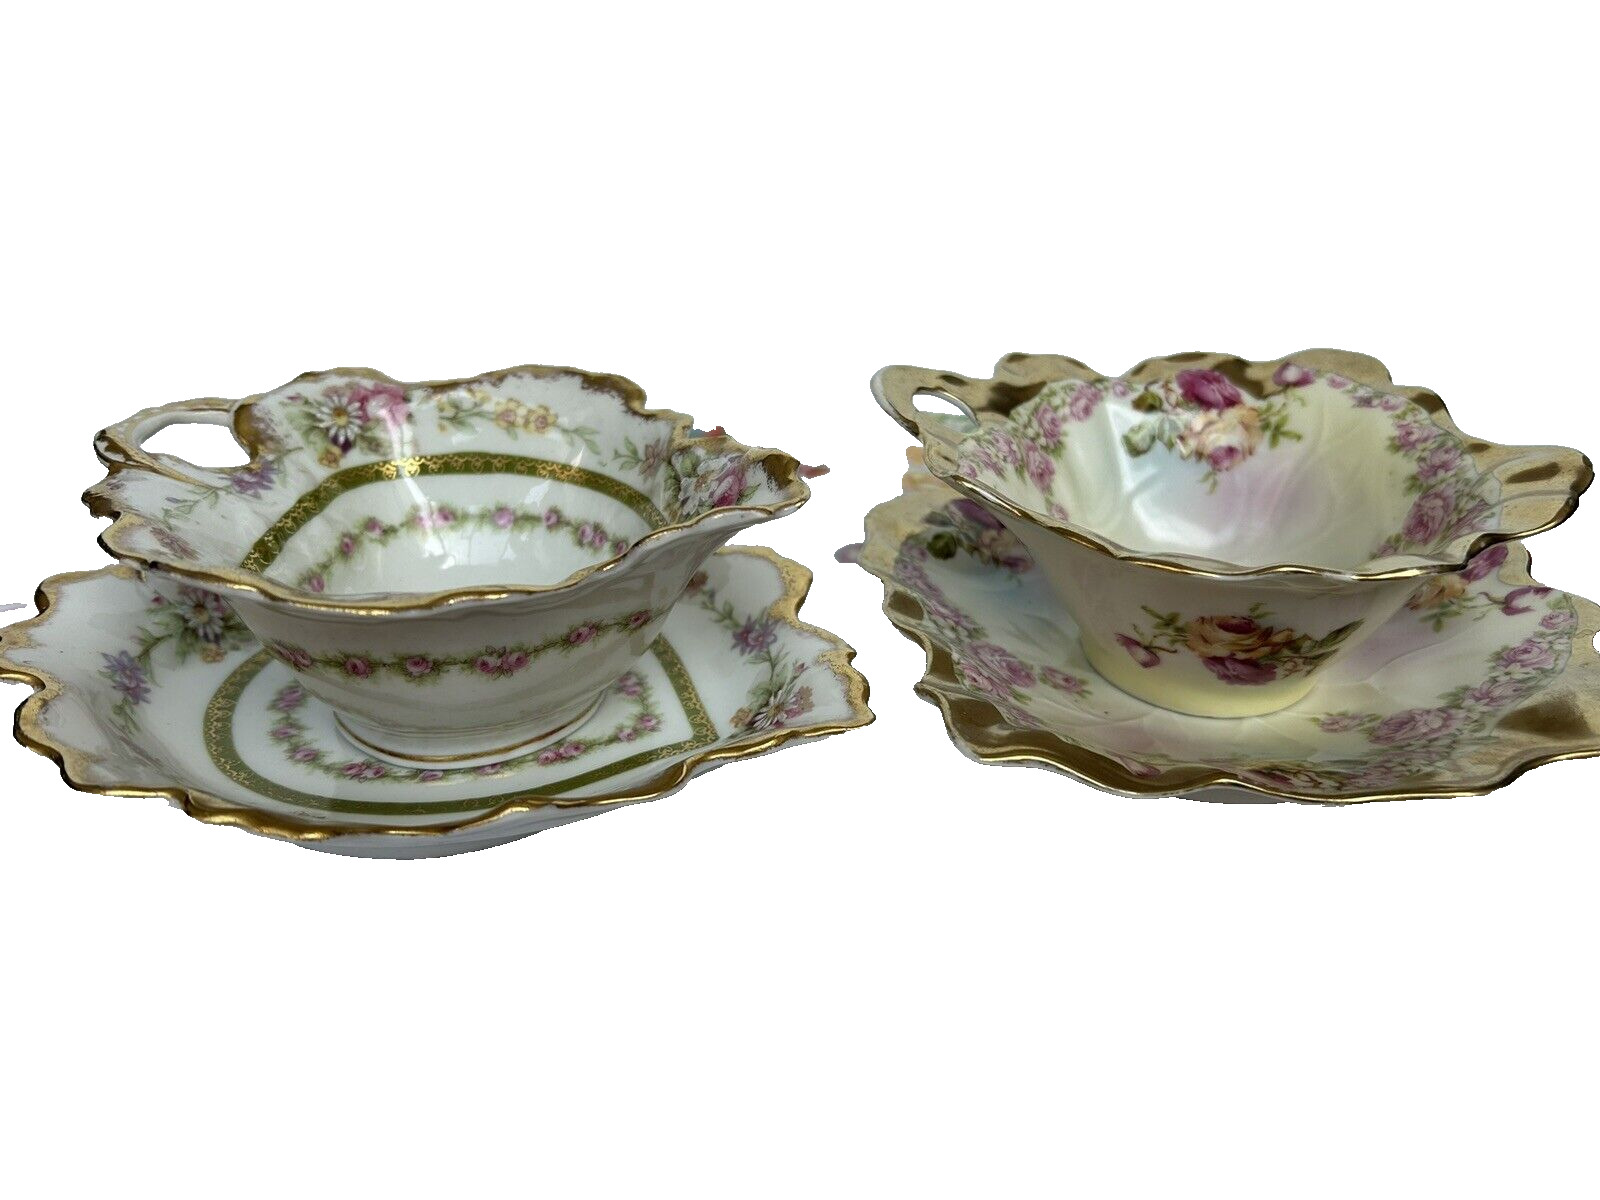 Gorgeous Rare Decorative Floral Teacups &Saucers, 2 Sets